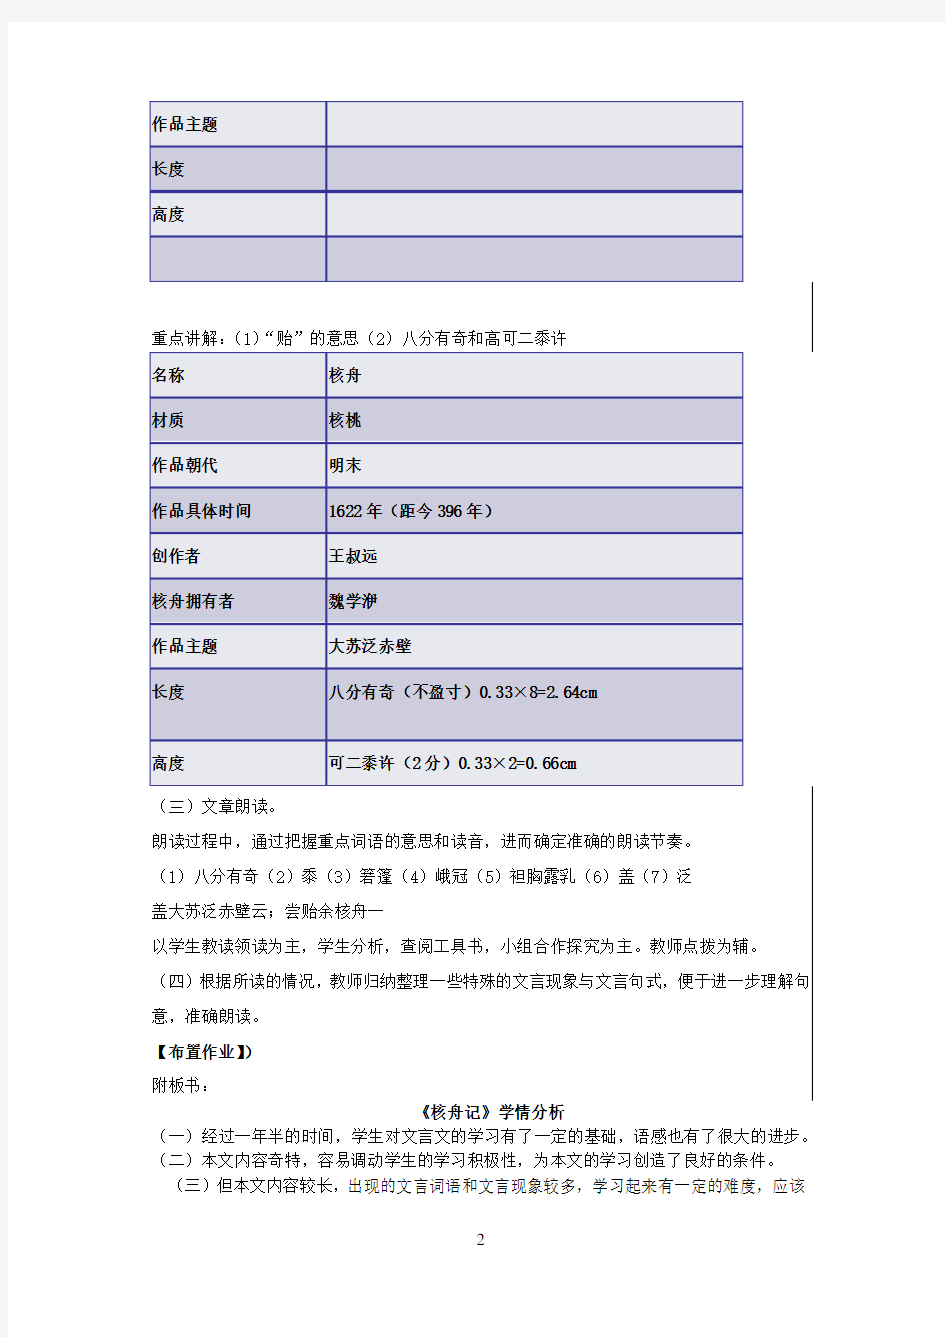 初中语文_核舟记教学设计学情分析教材分析课后反思